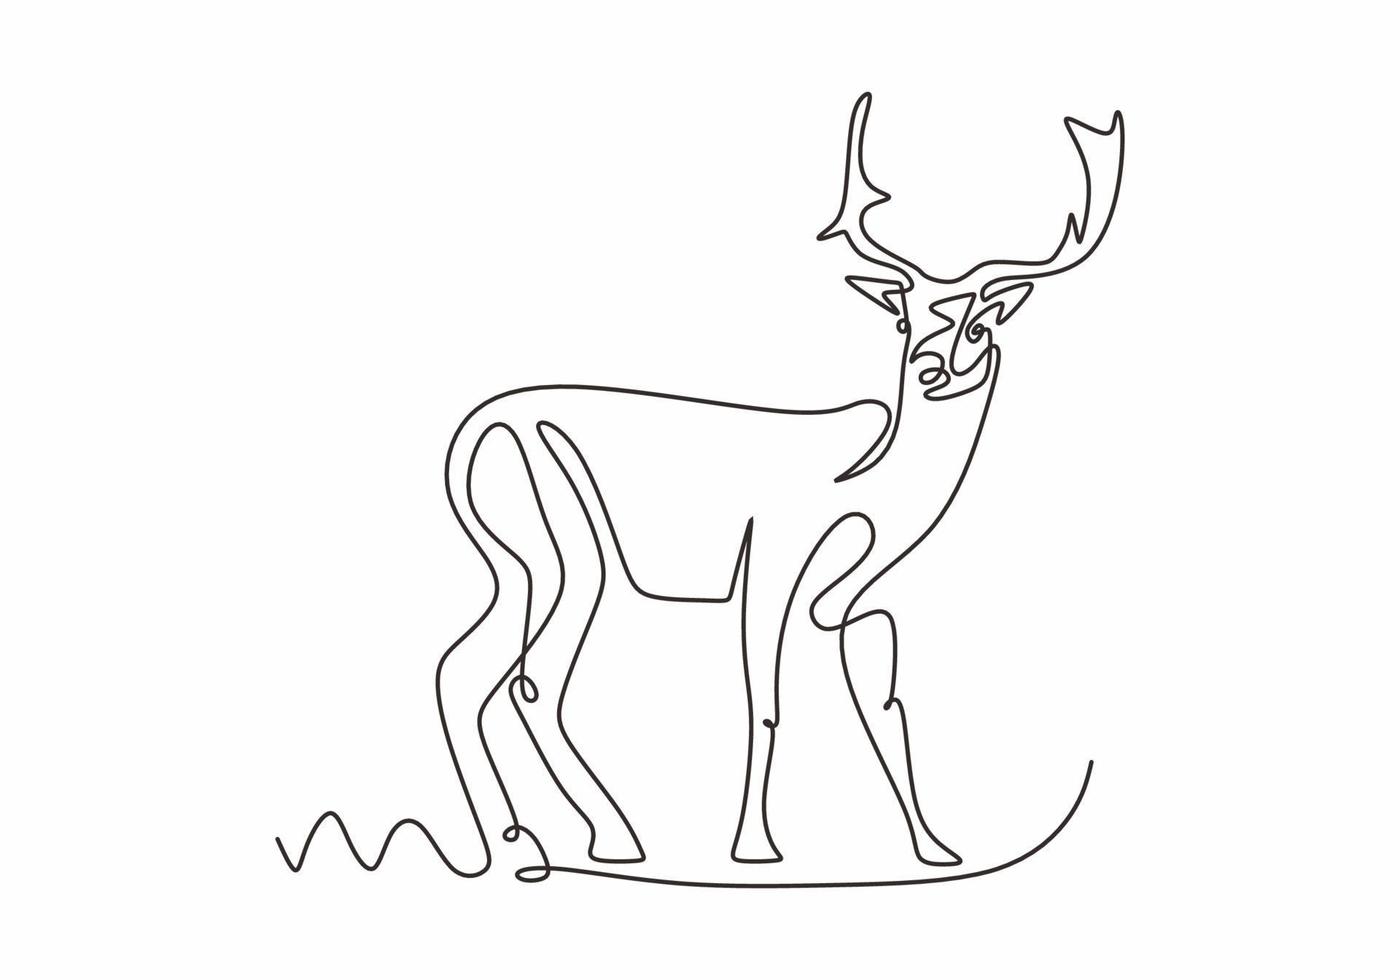 silueta de diseño de una línea de ciervos. minimalismo continuo dibujado a mano vector